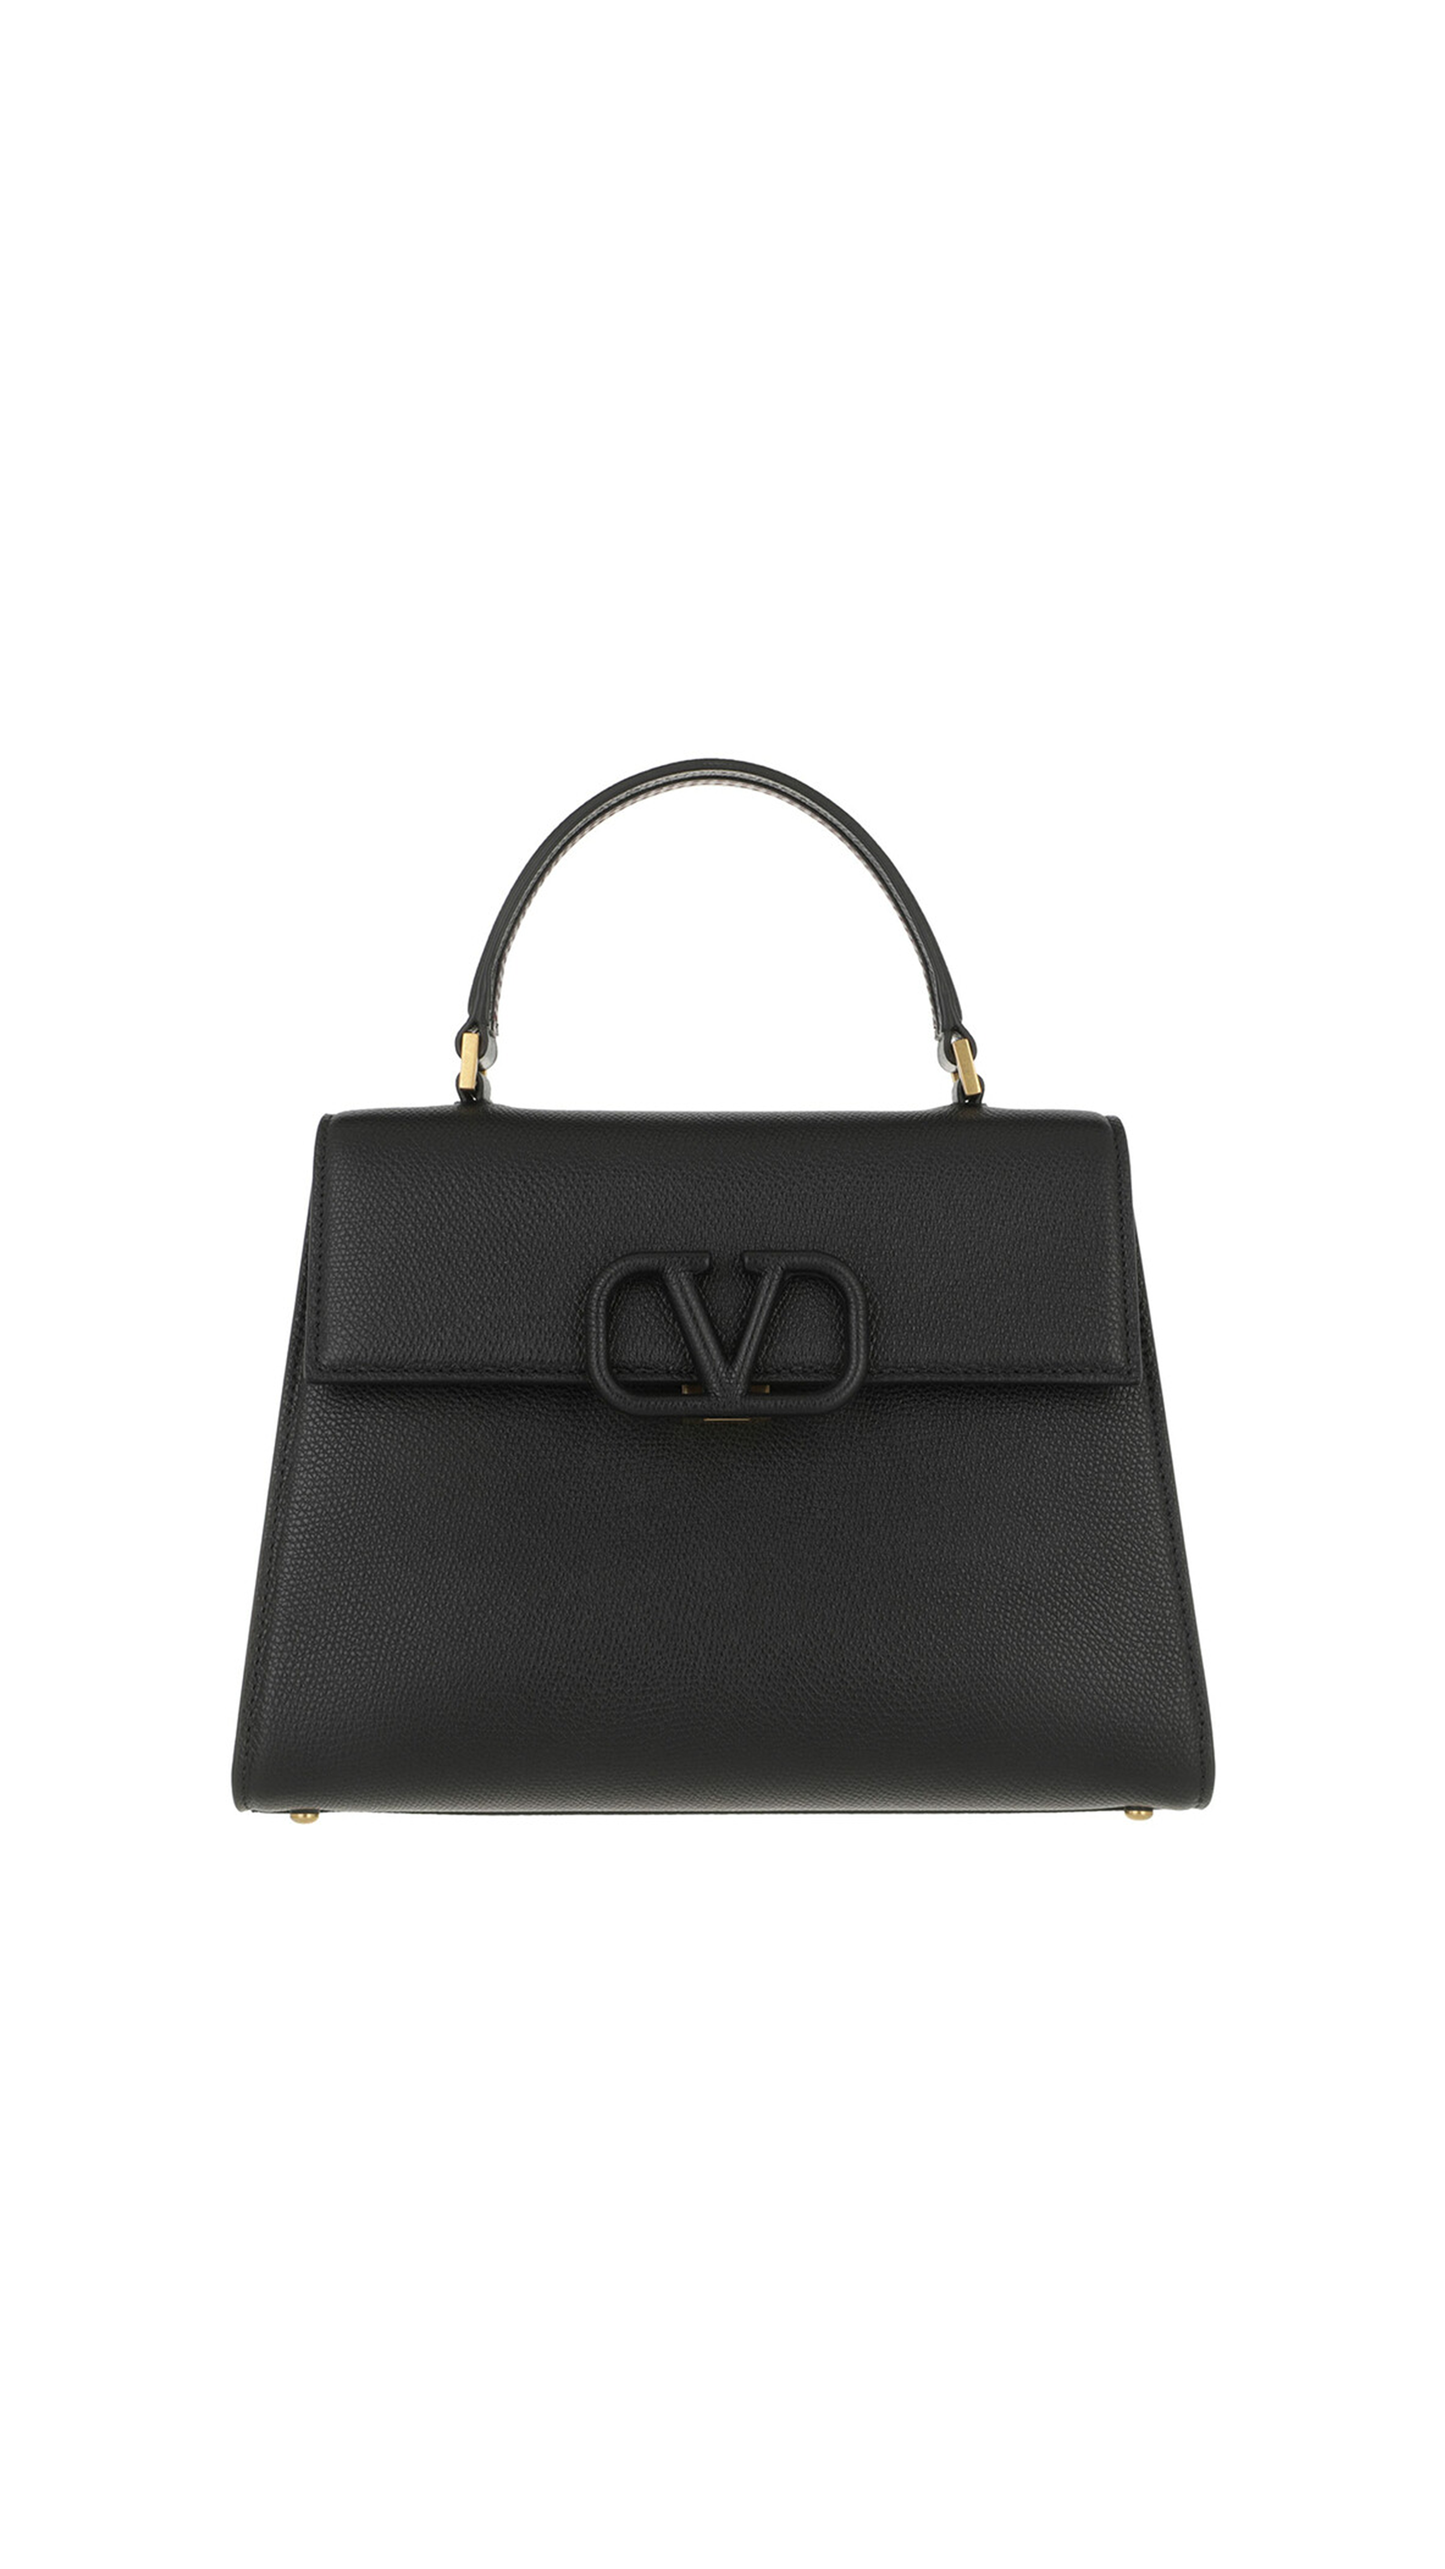 Medium Vsling Calfskin Handbag - Black